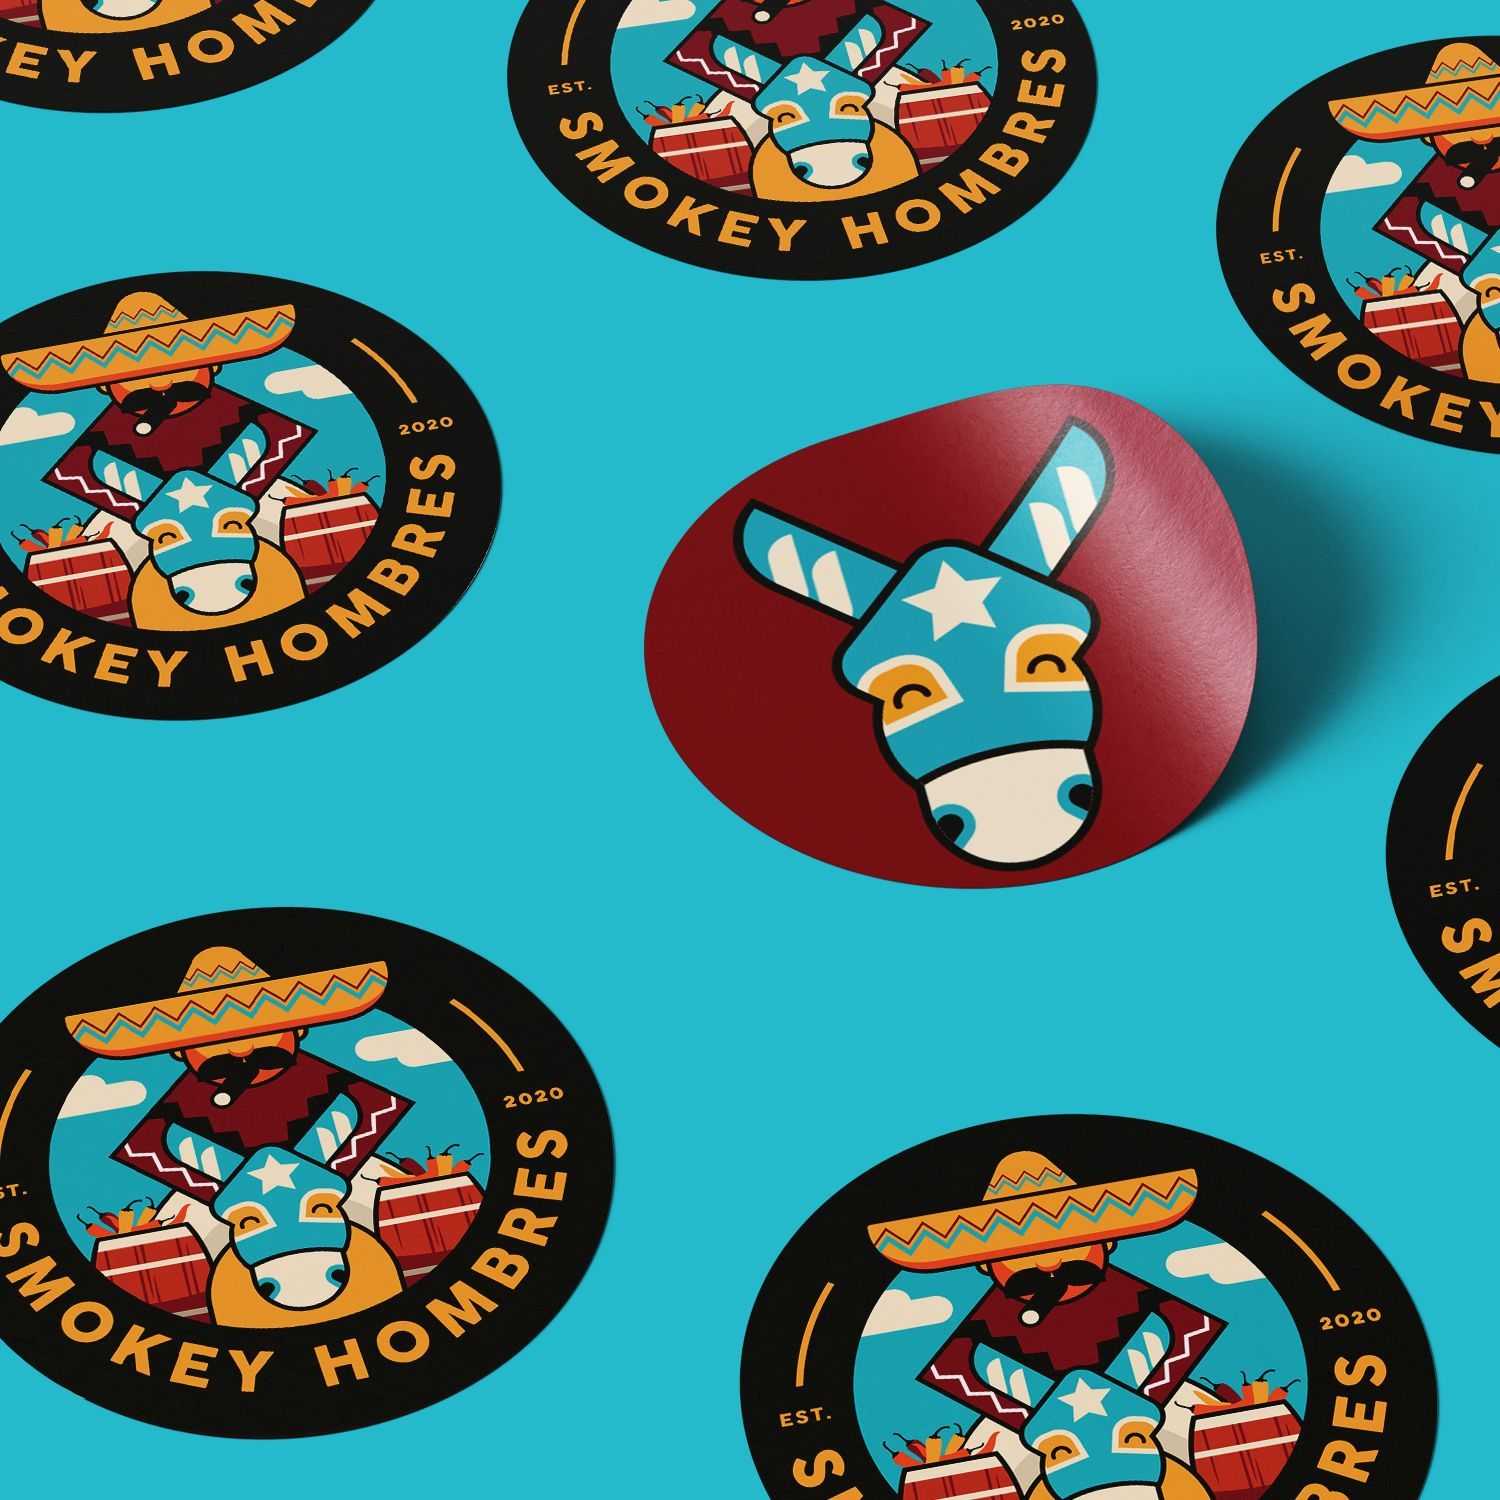 Smokey Hombres Logo and icon design